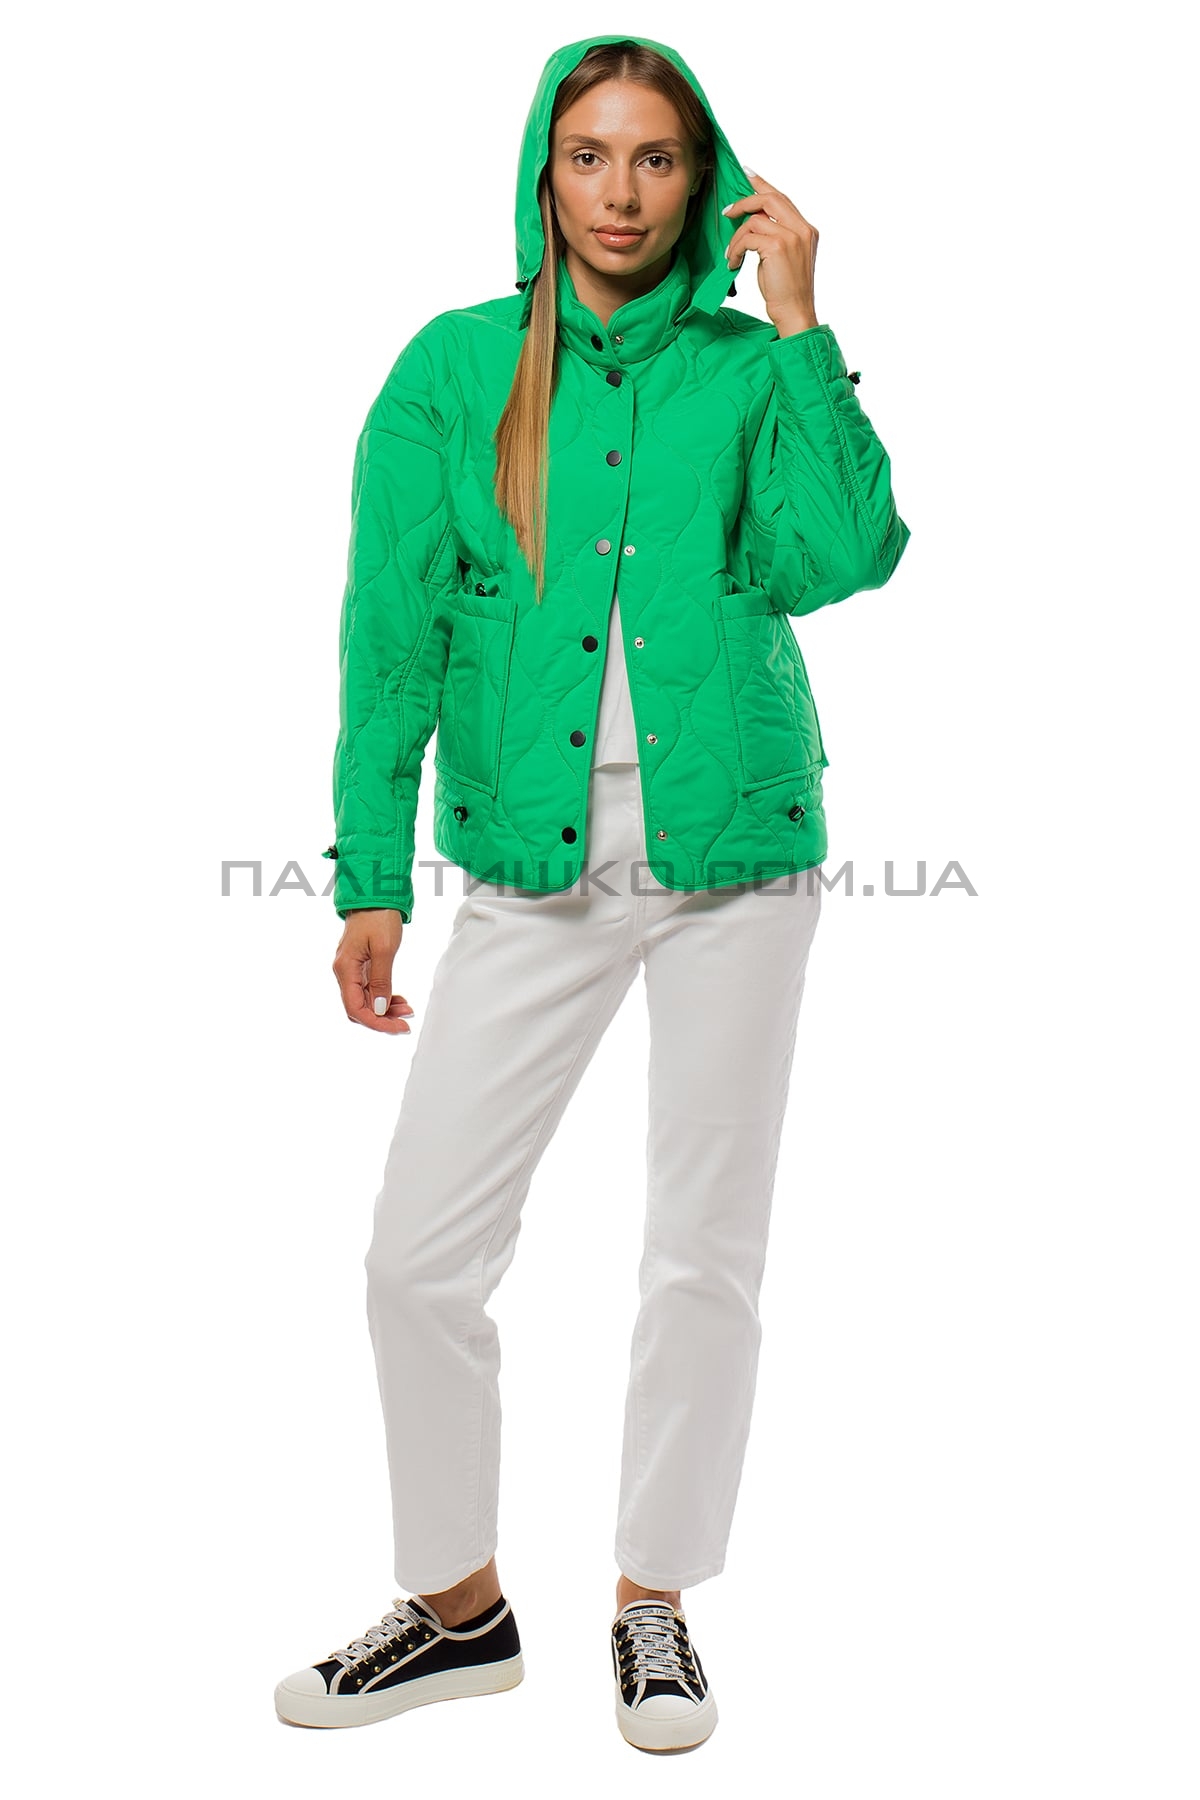  Женская куртка зеленая